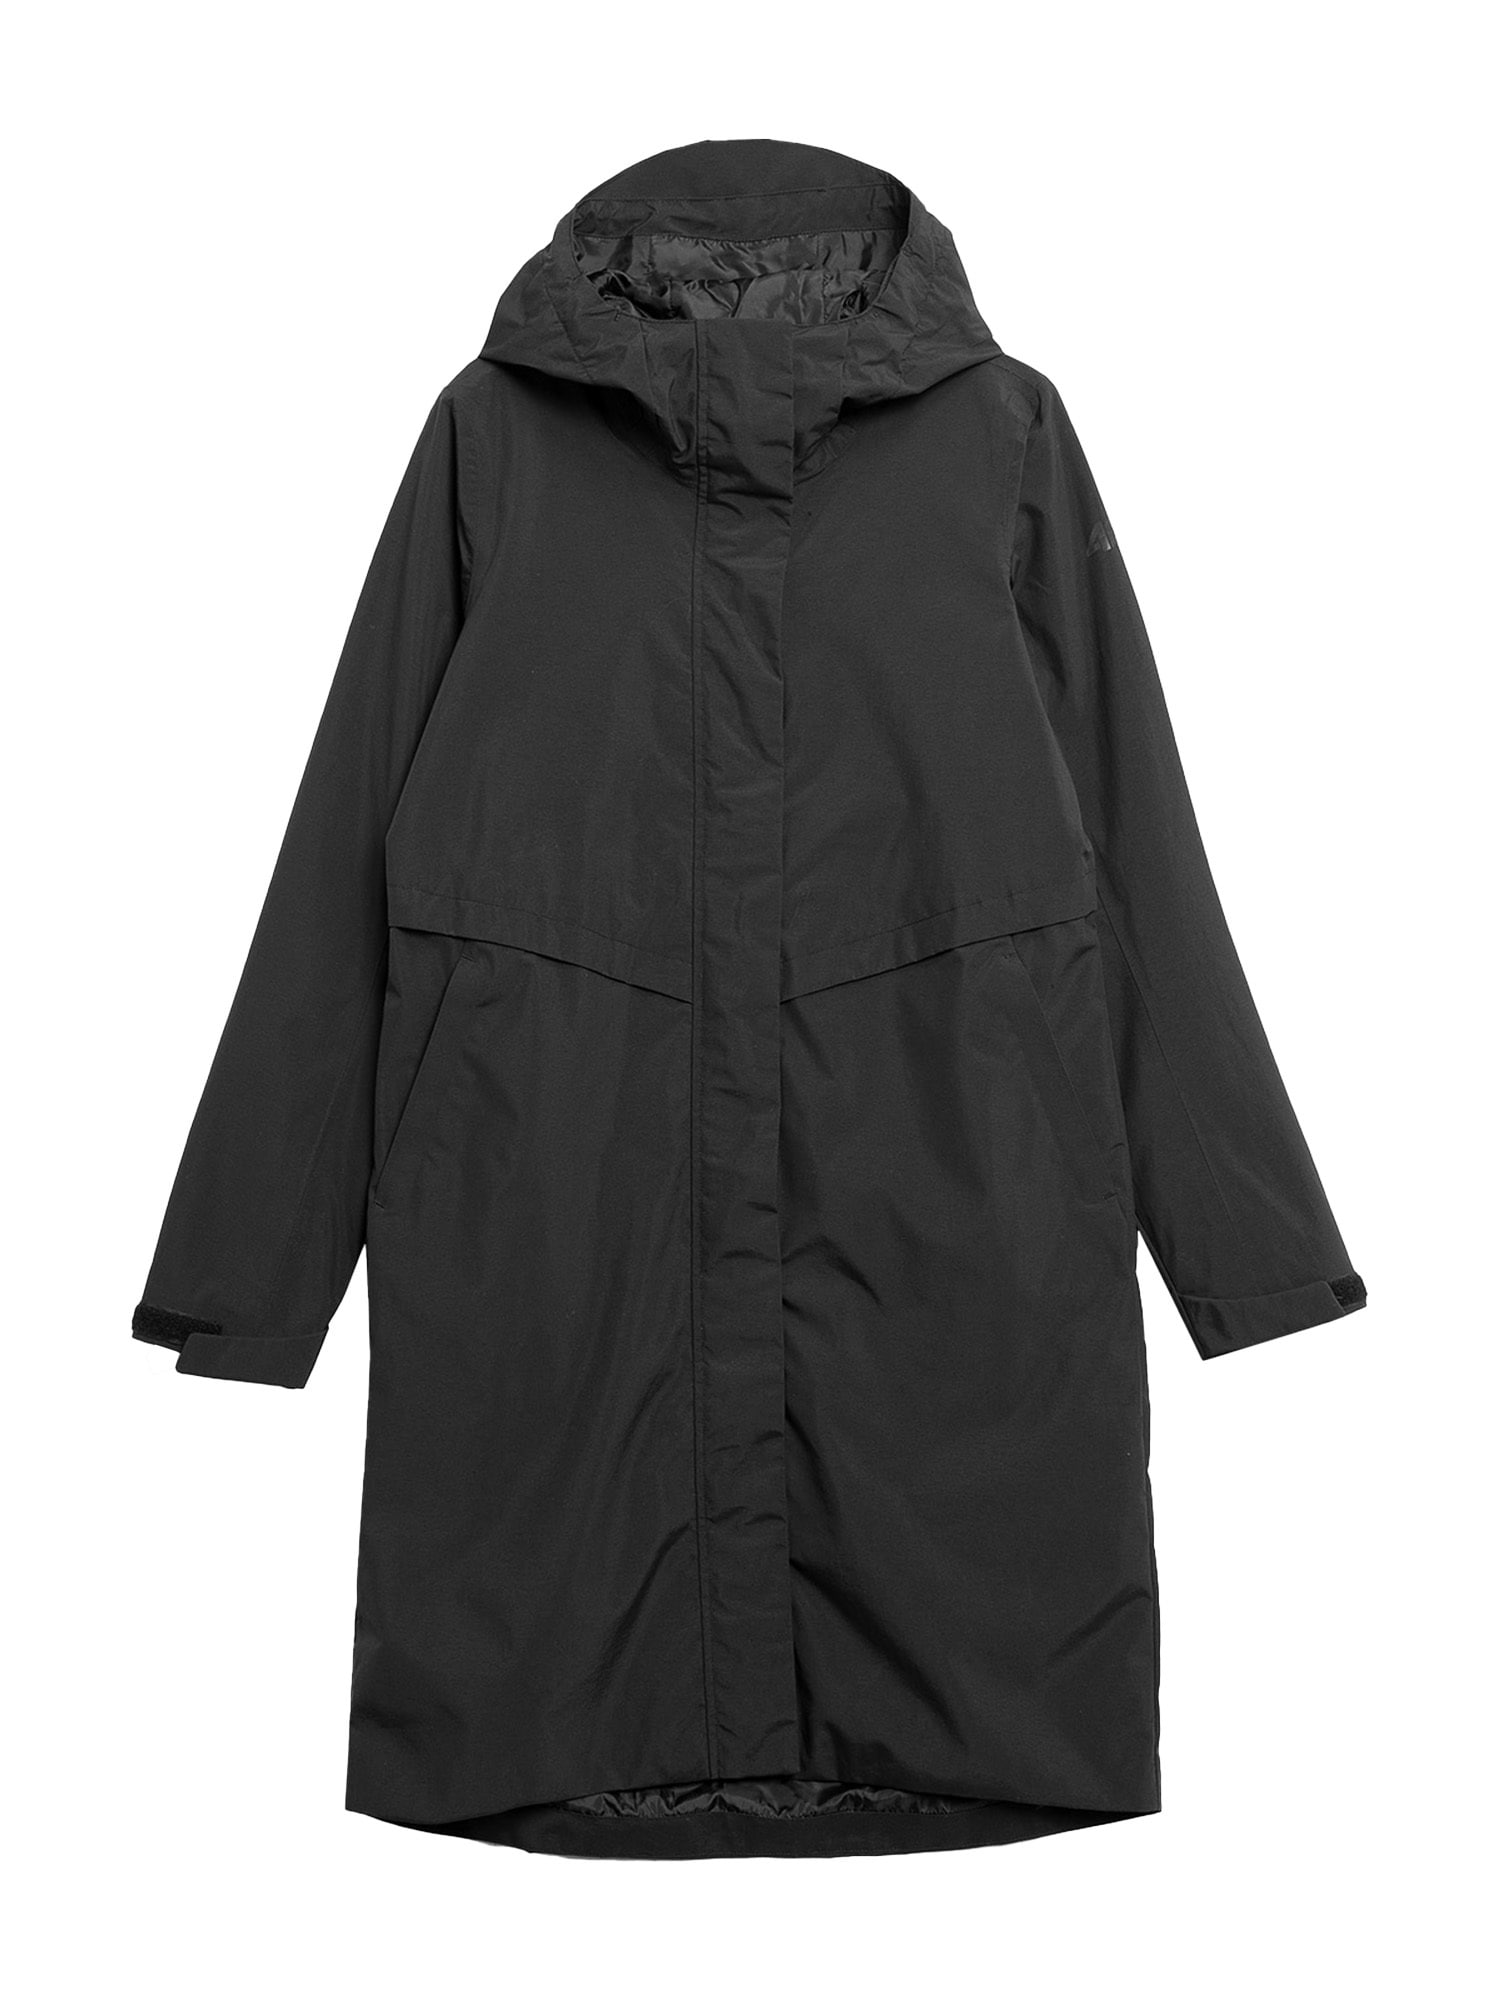 Outdoorový kabát čierna 4F